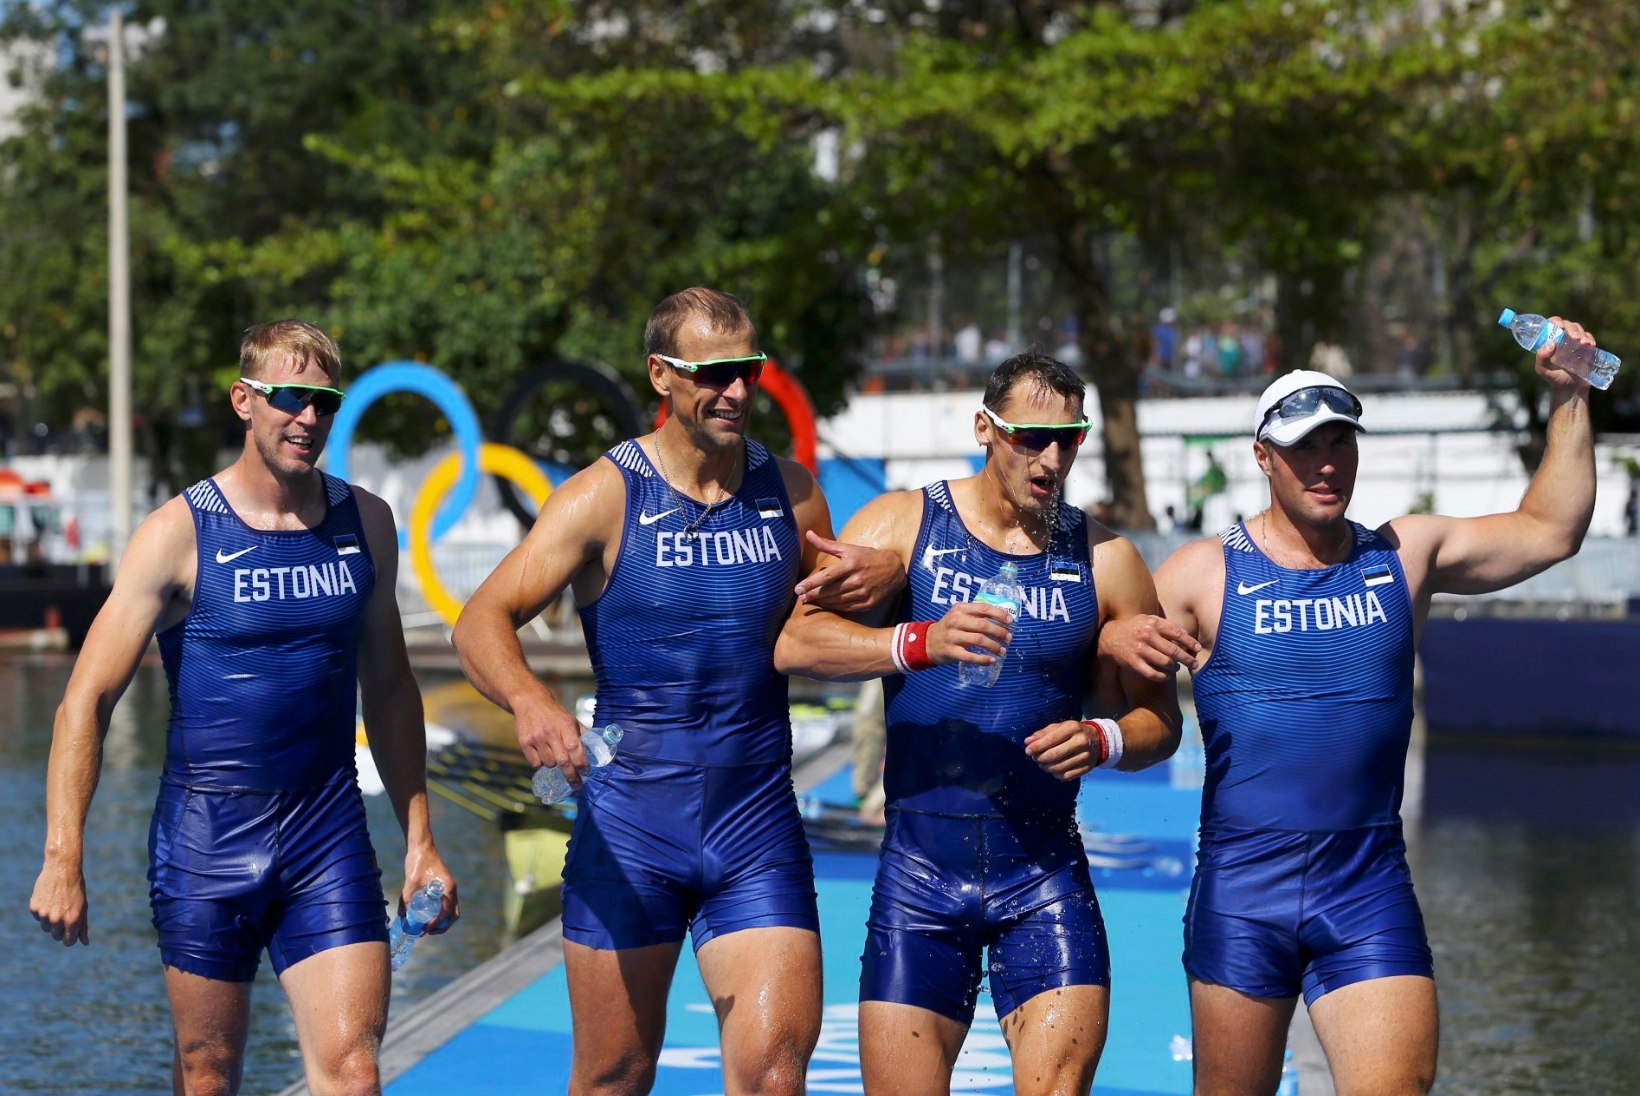 GALERII | Eesti vägevad sõudjad said kaela olümpiapronksid!